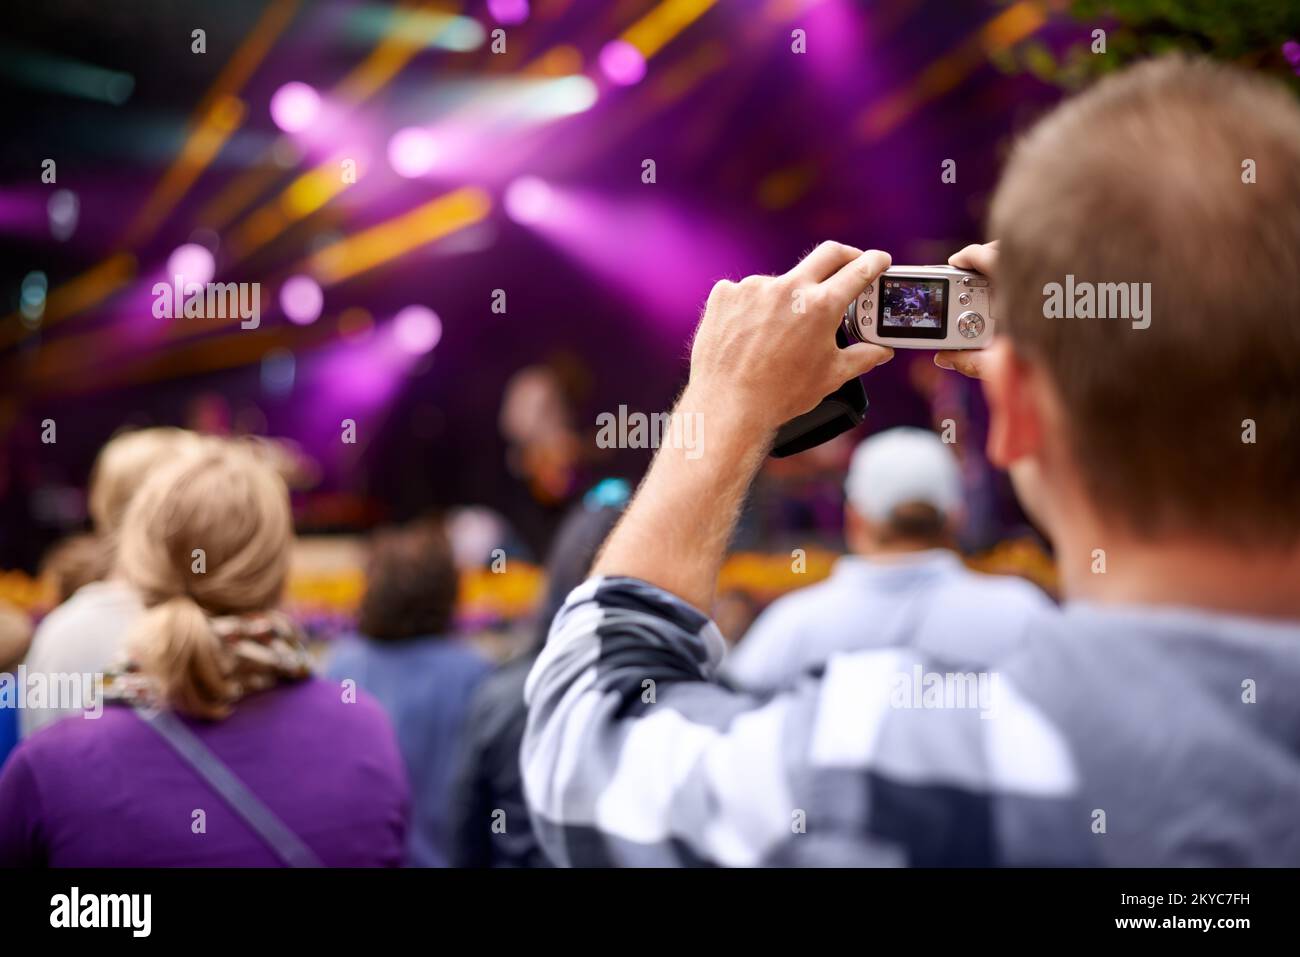 Leben mit Verschlusszeit. Rückansicht eines Mannes in der Menge, der eine Kamera hält, um ein Konzert zu fotografieren. Stockfoto